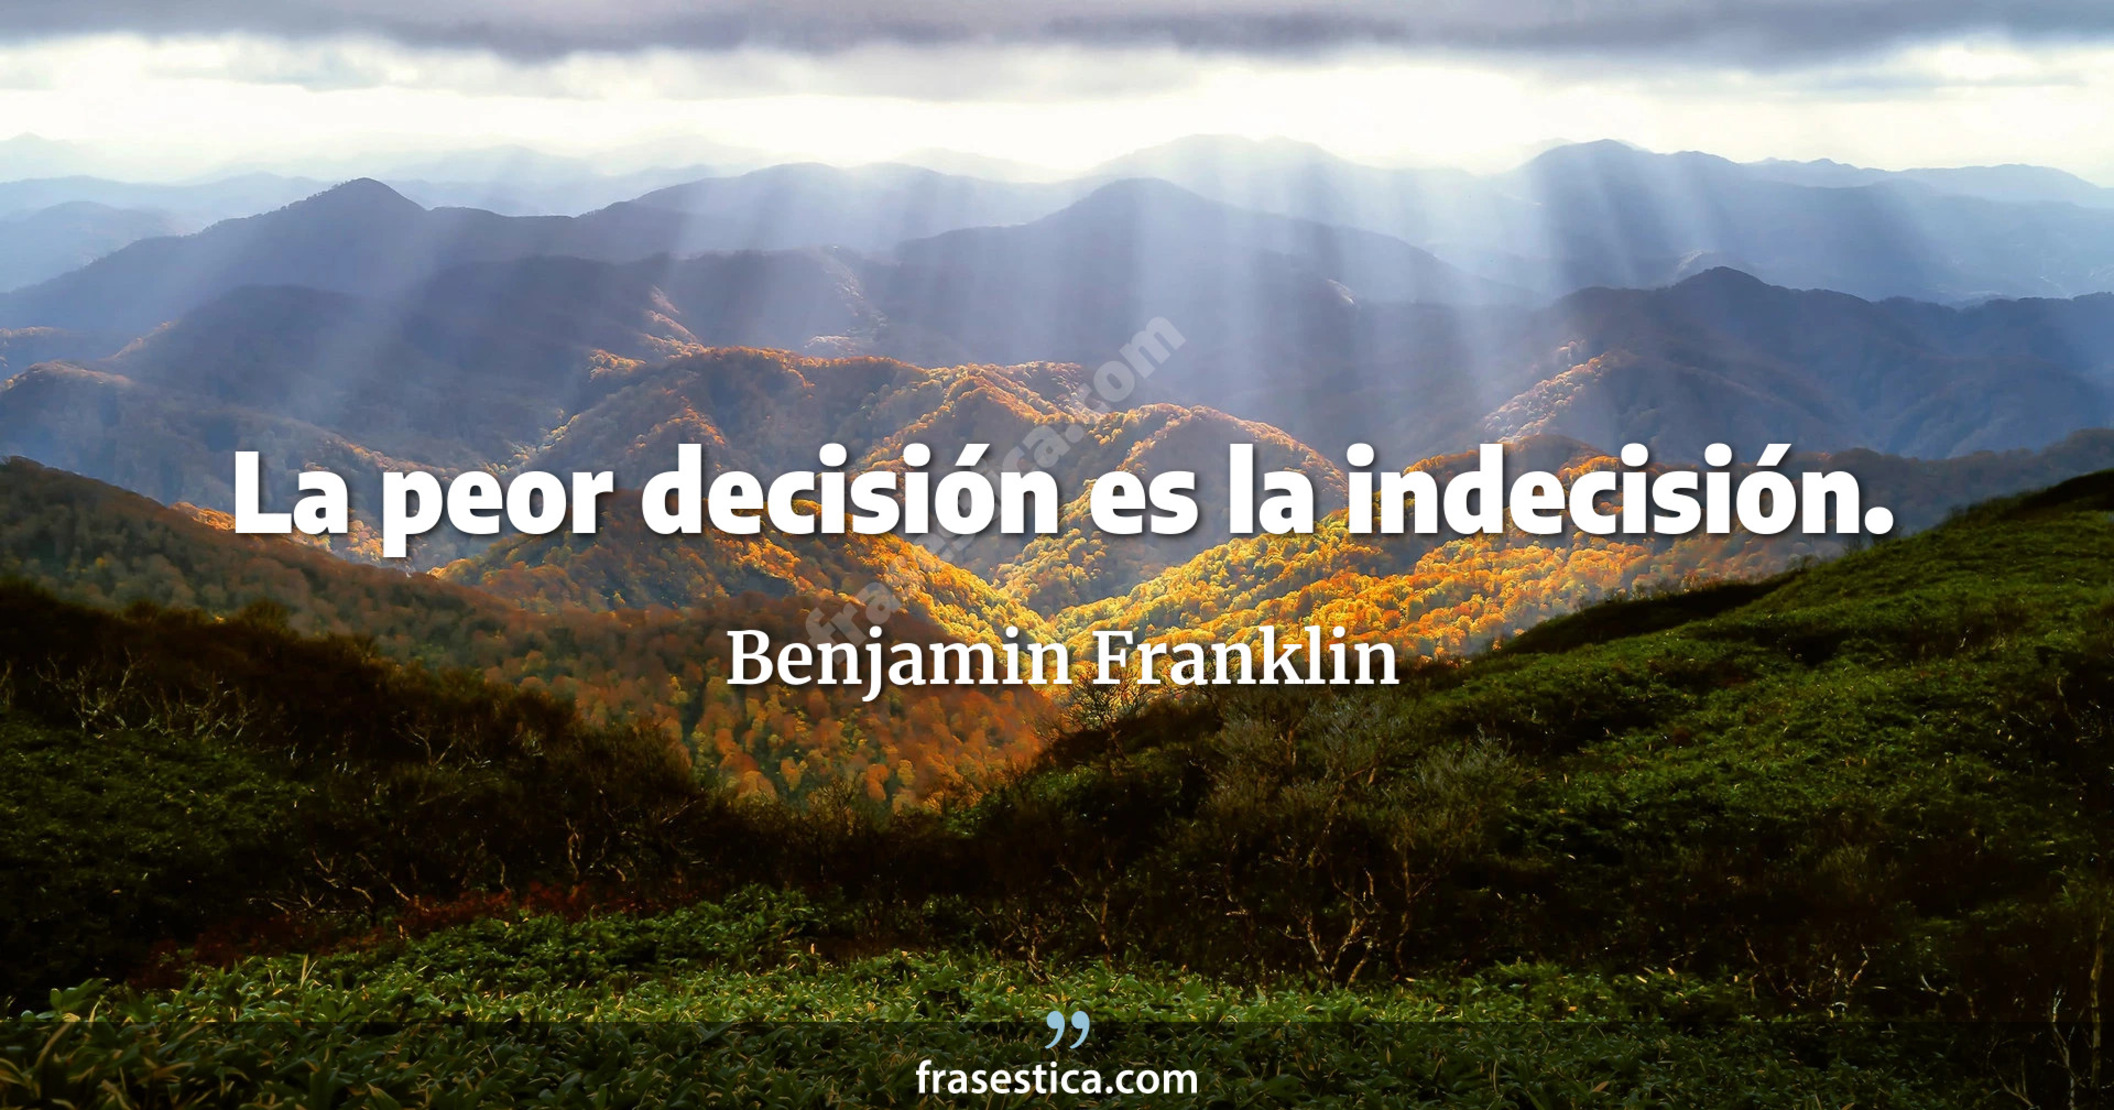 La peor decisión es la indecisión. - Benjamin Franklin